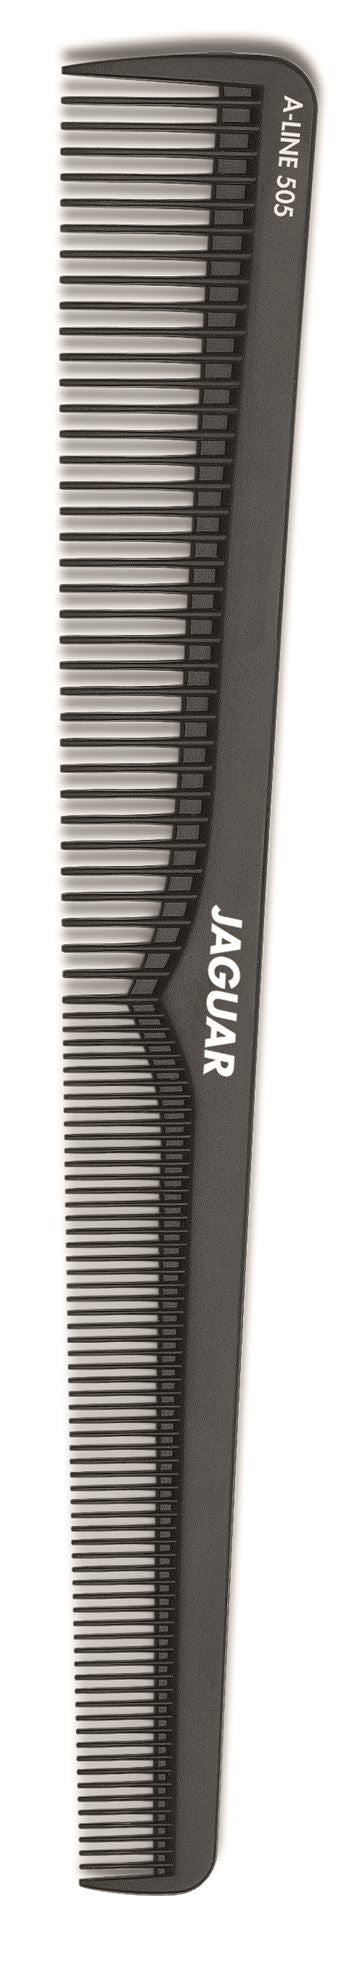 Jaguar Barber Cutting Comb 18,4Cm